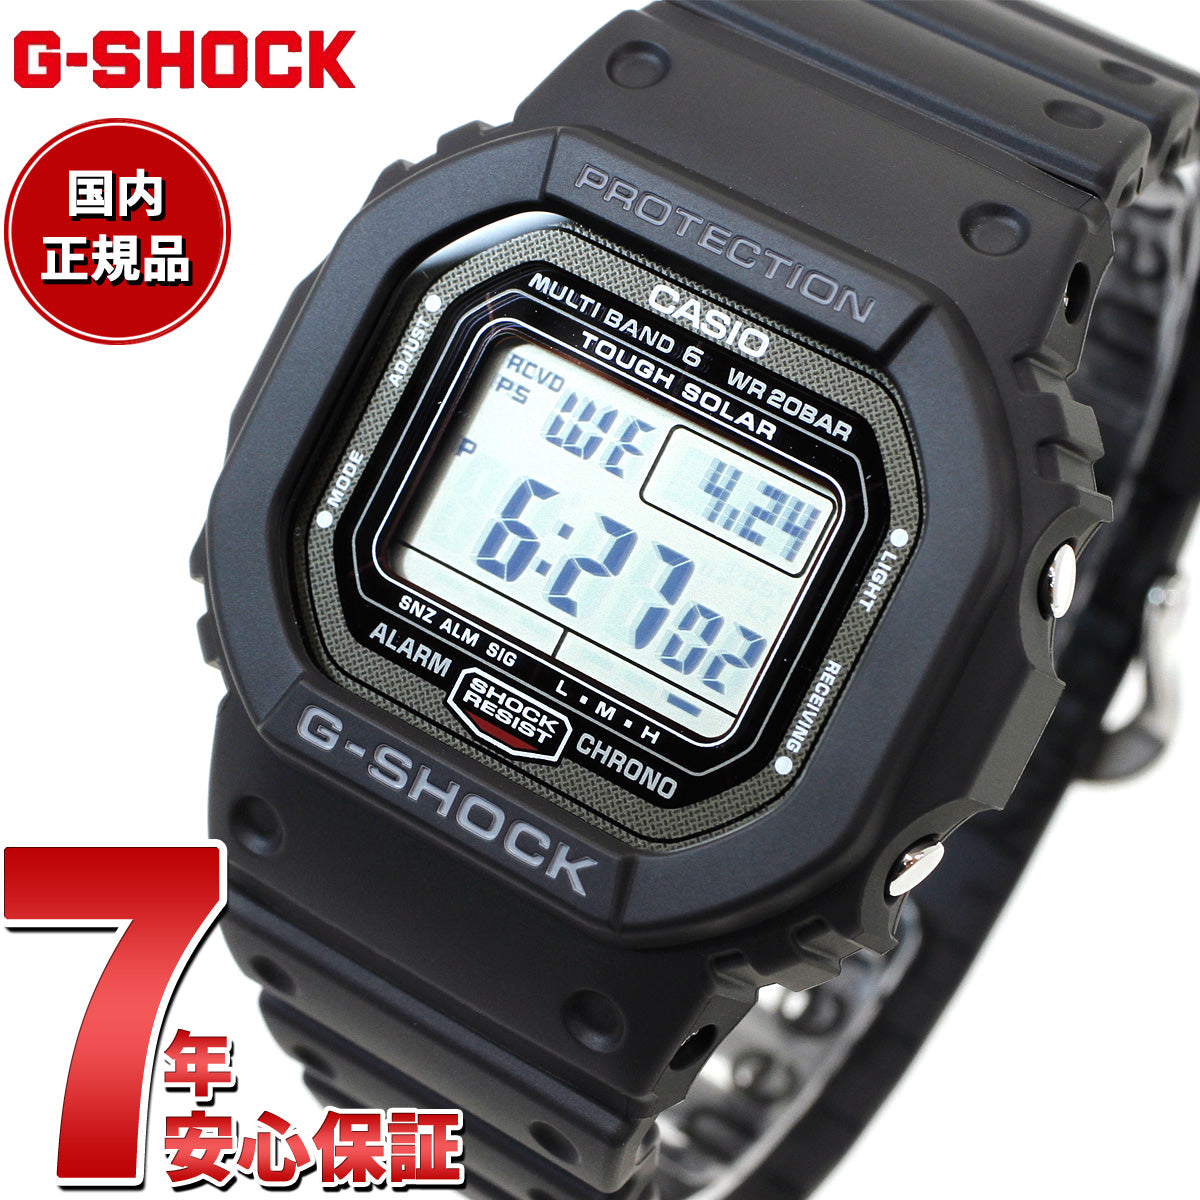 生産終了品 G-SHOCK GW-5000-1JF タフソーラー充電 電波時計 - 時計